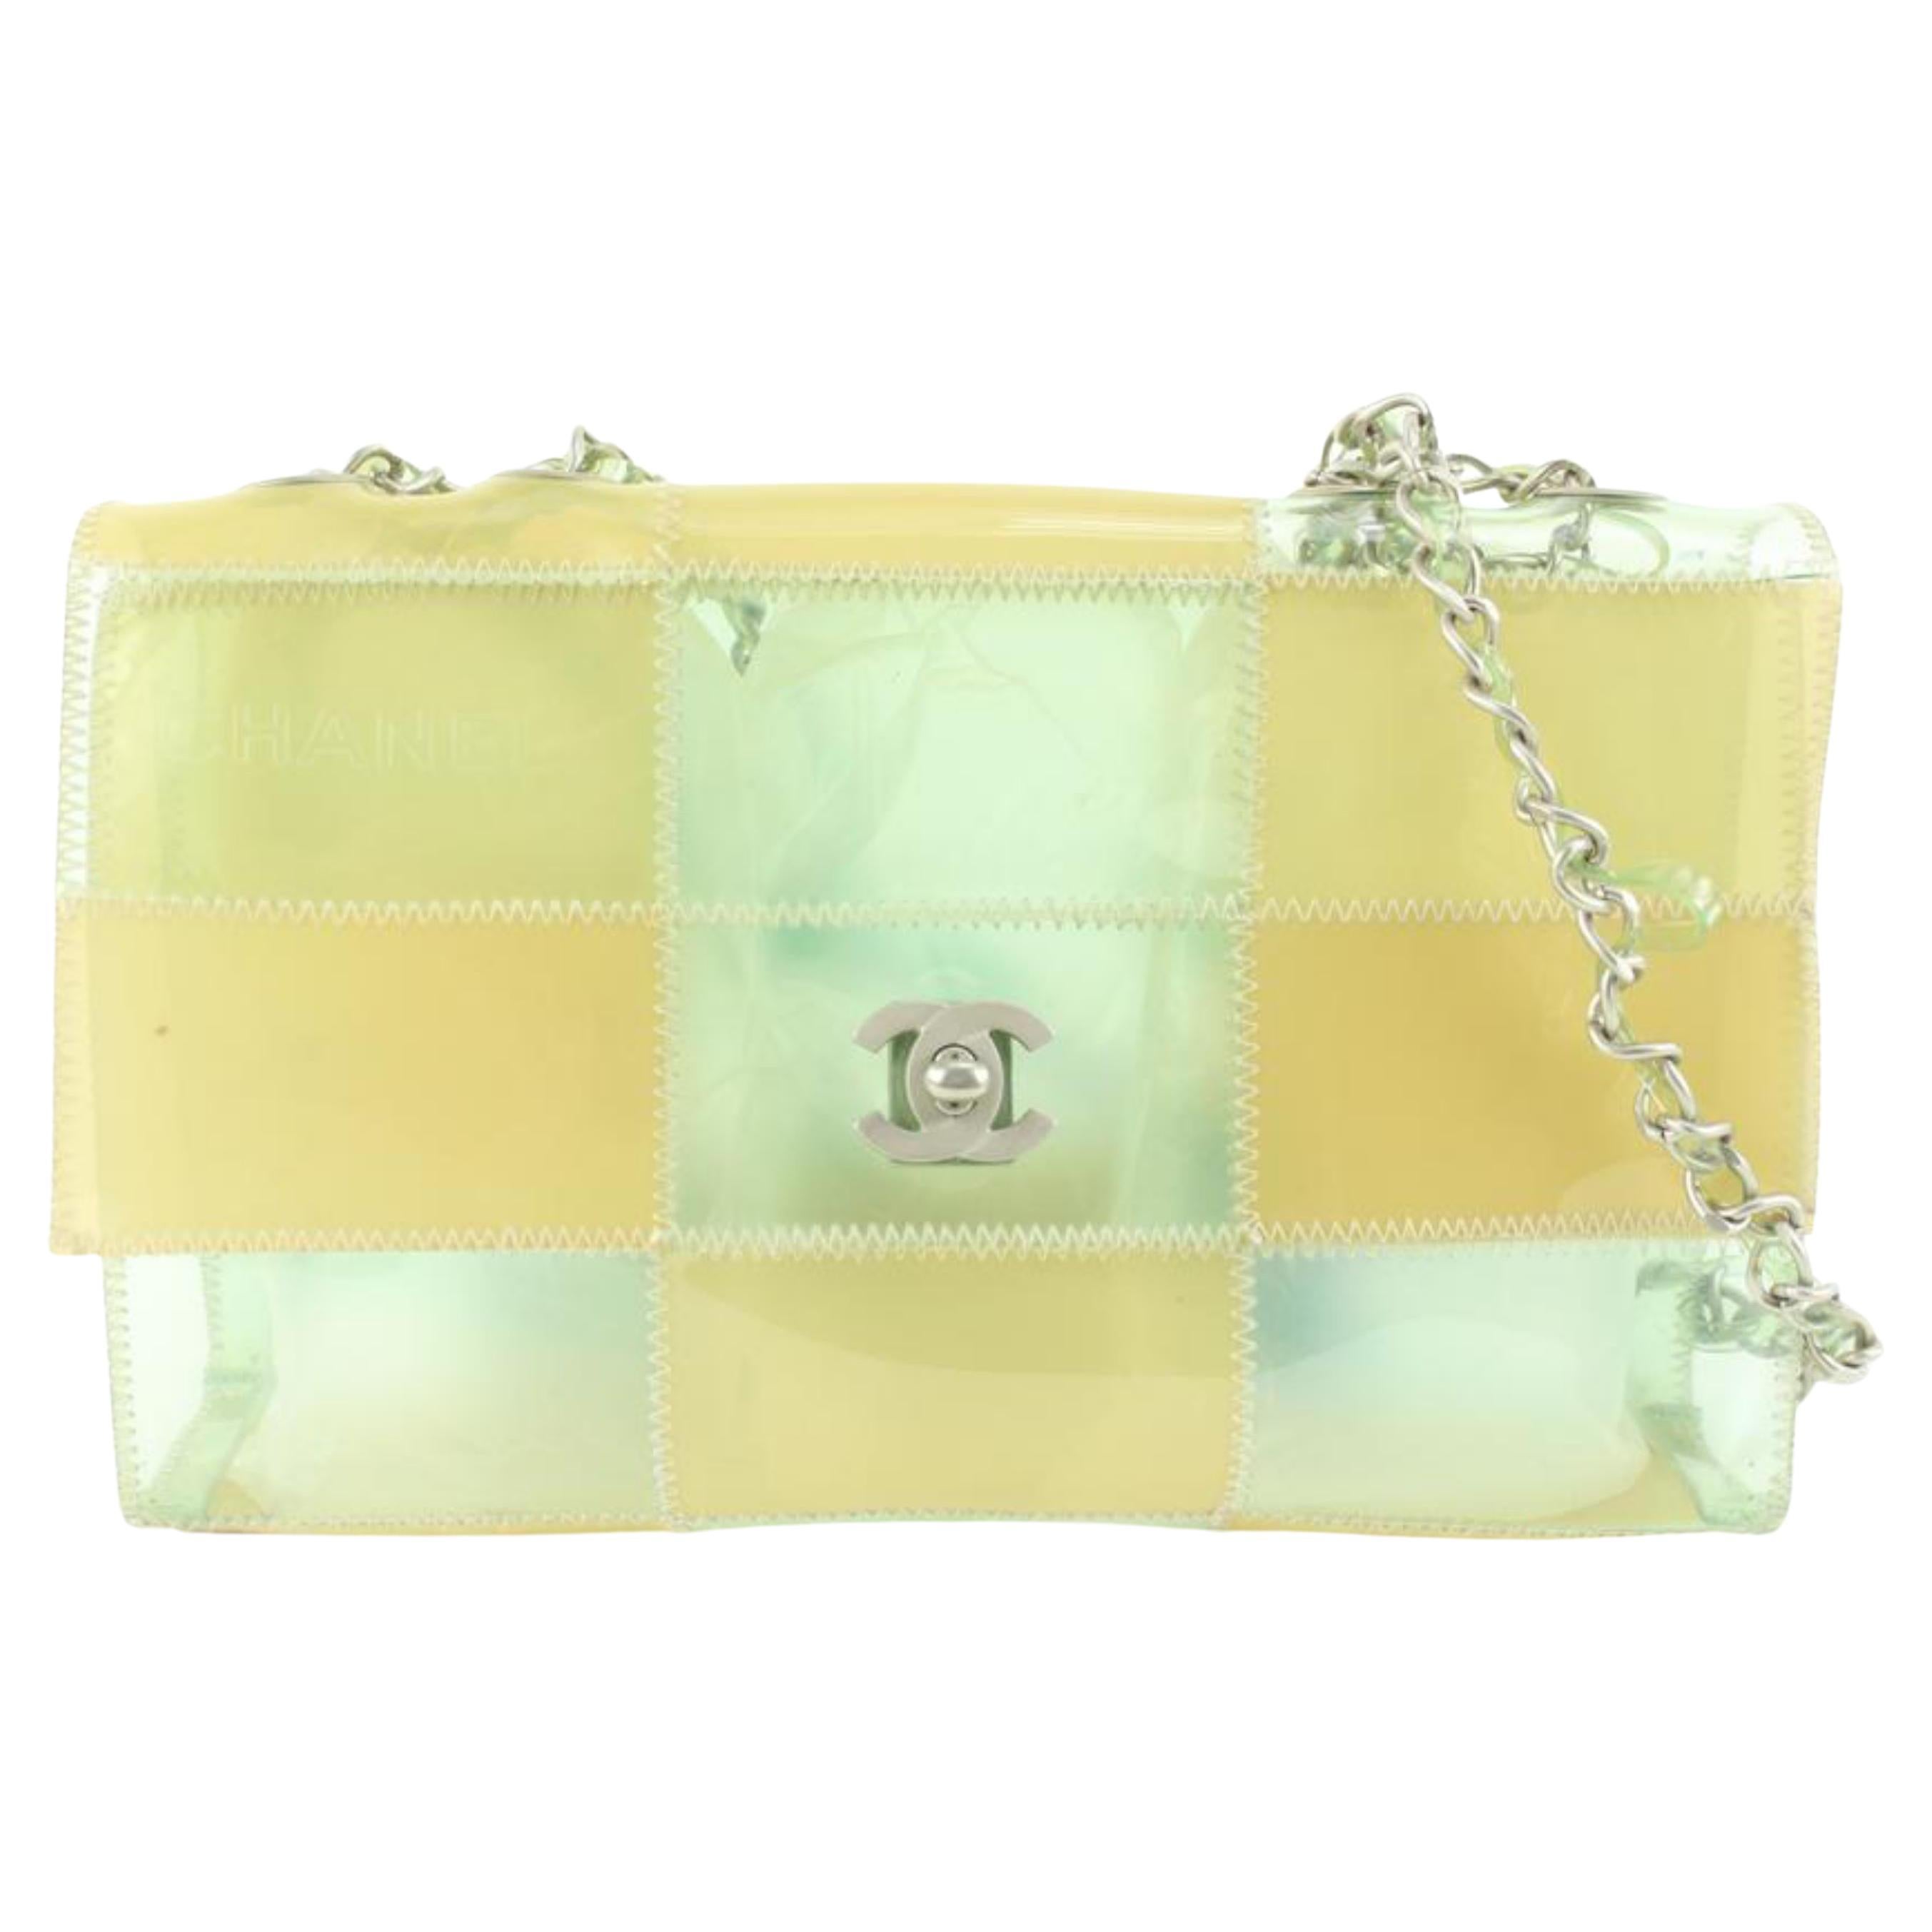 Chanel, sac à rabat à chaîne translucide en vinyle transparent et patchwork, 1025c27